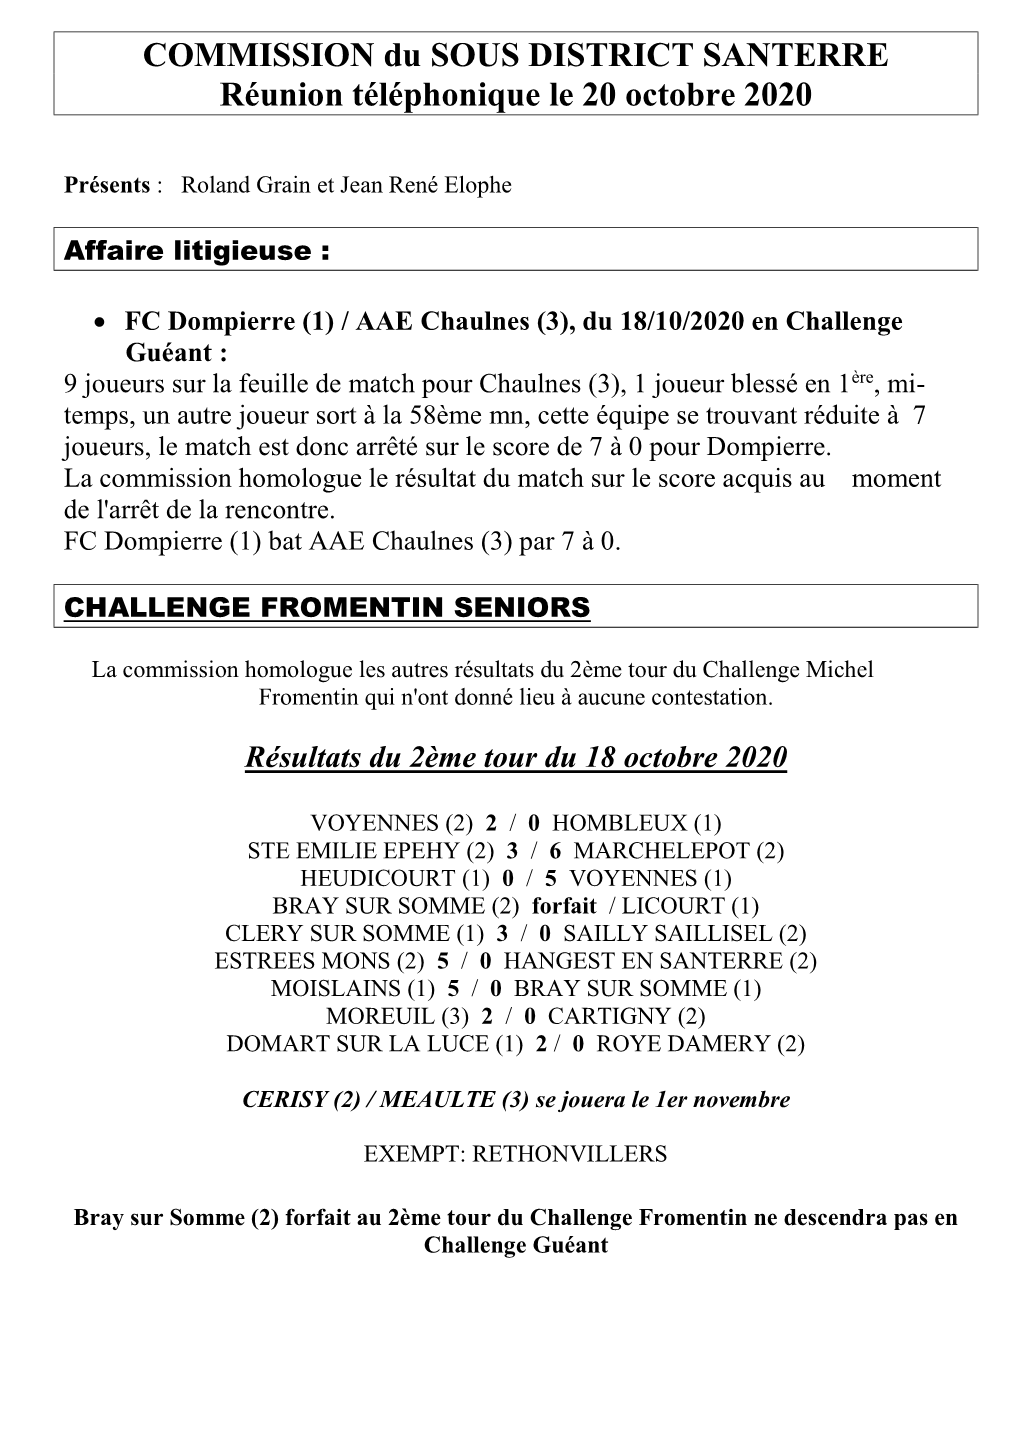 COMMISSION Du SOUS DISTRICT SANTERRE Réunion Téléphonique Le 20 Octobre 2020